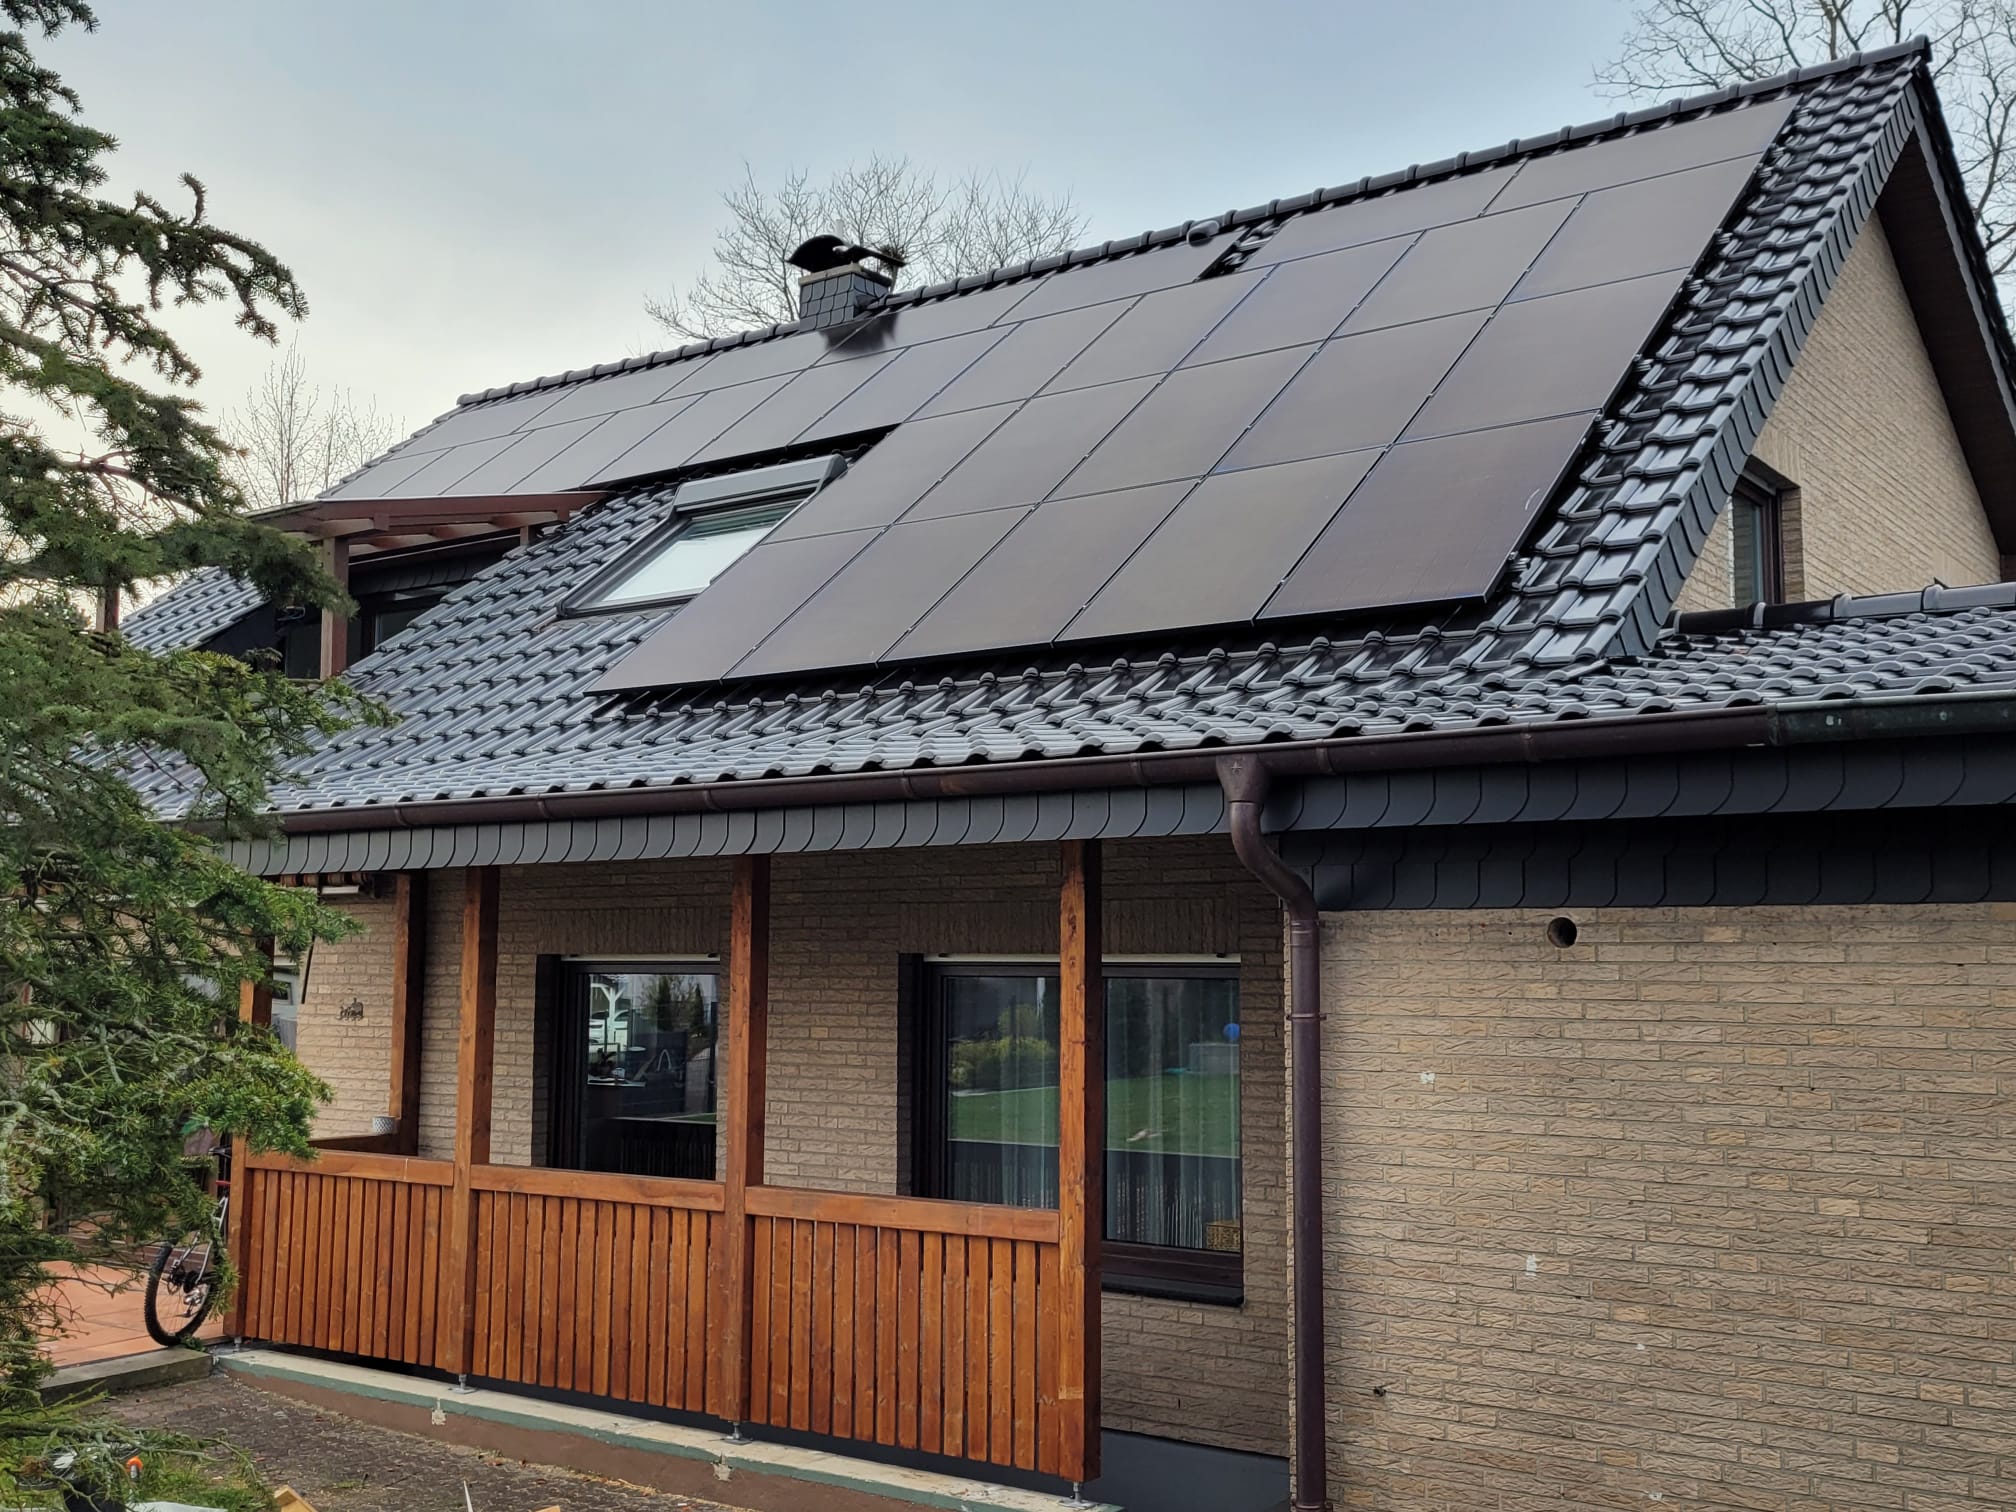 Dach – Photovoltaik
Anlage in Augustdorf